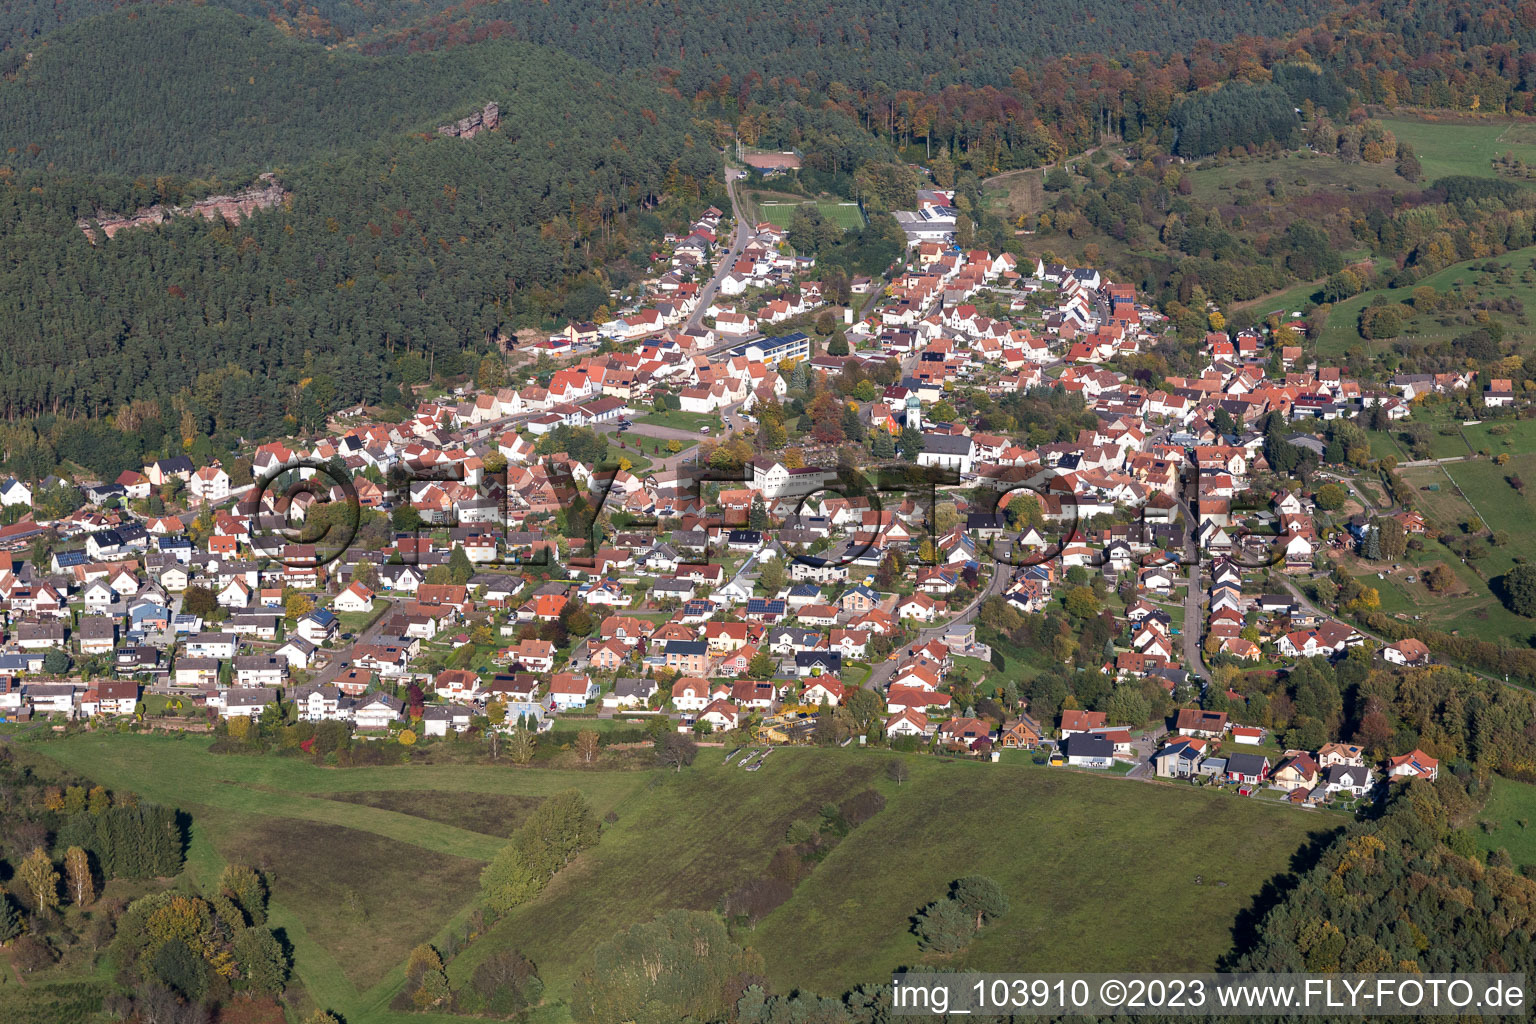 Luftbild von Busenberg im Bundesland Rheinland-Pfalz, Deutschland